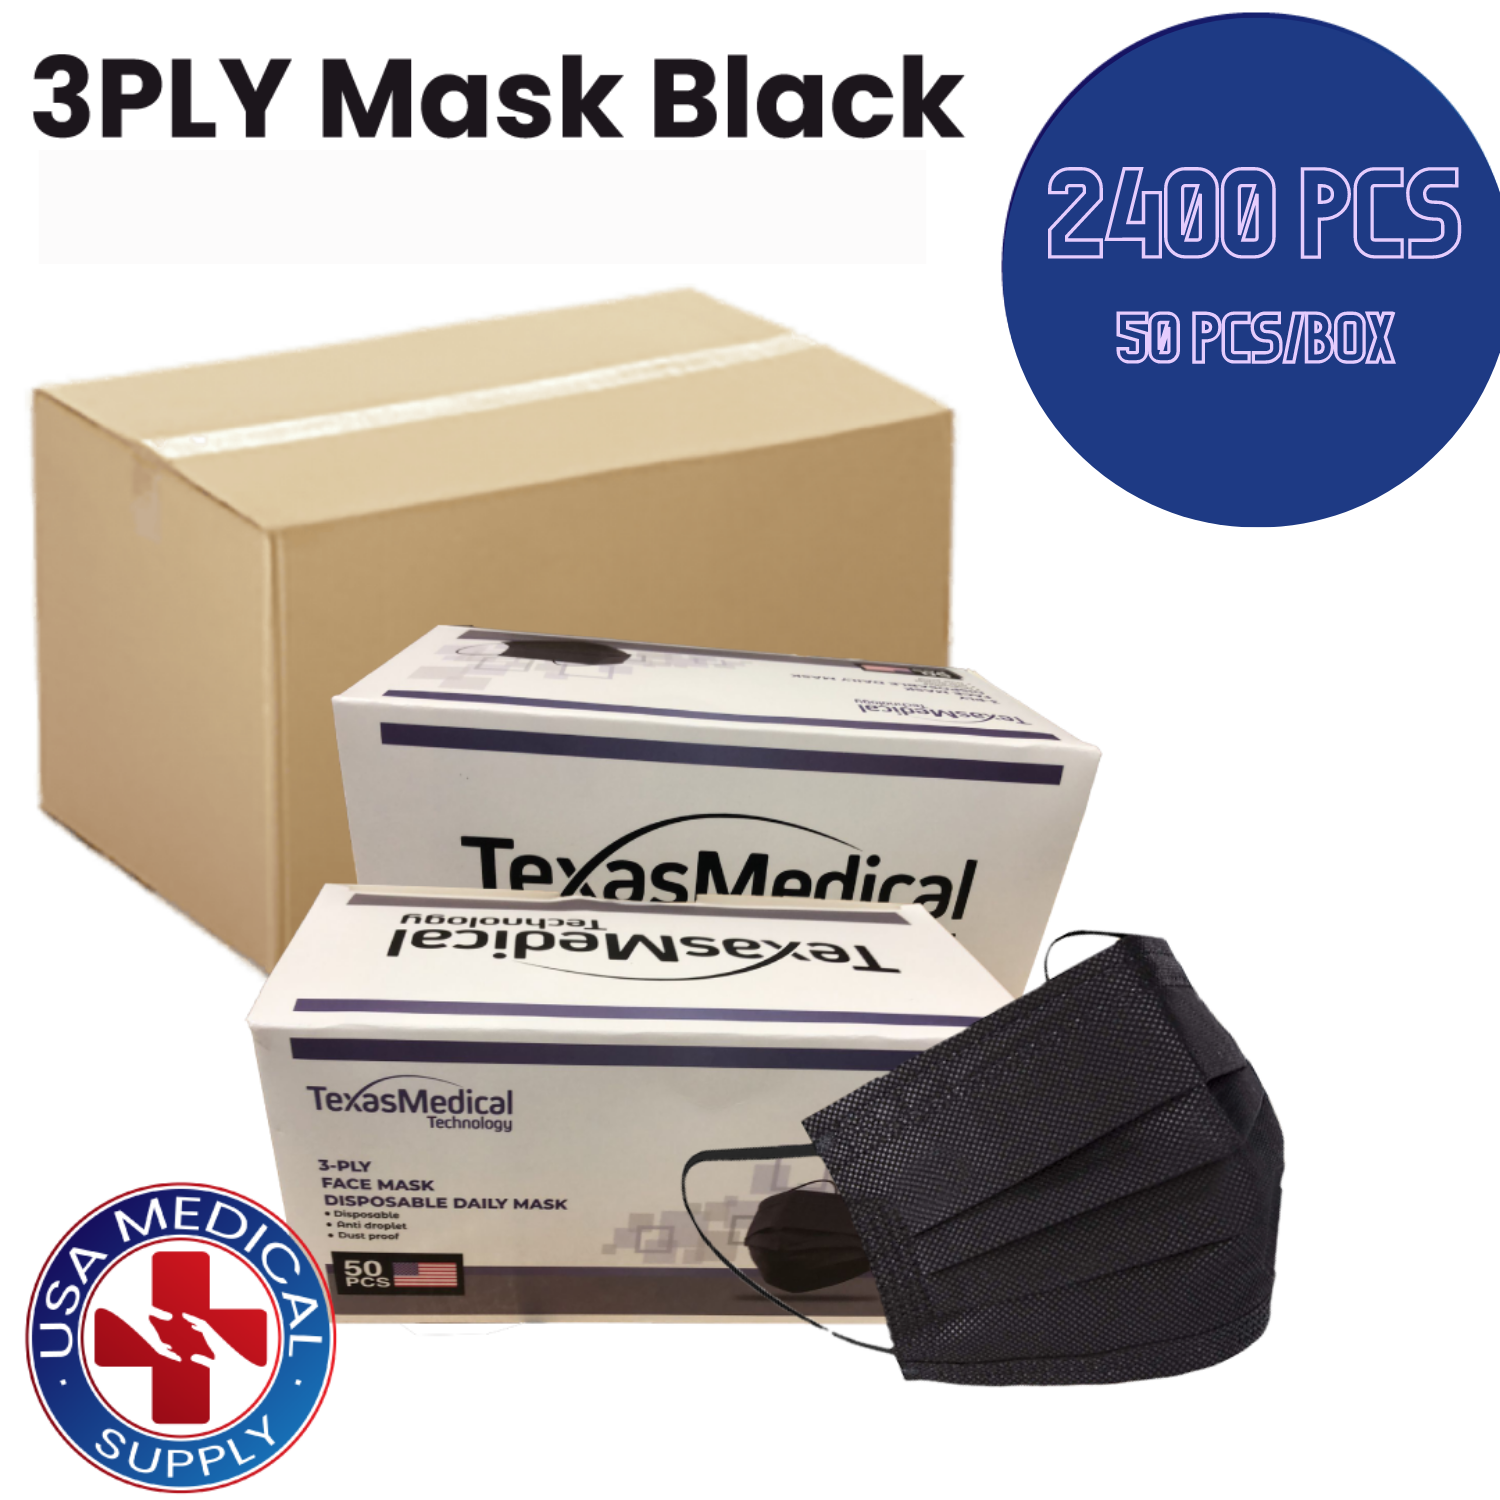 3PLY Mask Black - 2400 PCS at $2.50/ Box - (50Pcs/Box - 48 Boxes/Case) - USA Medical Supply